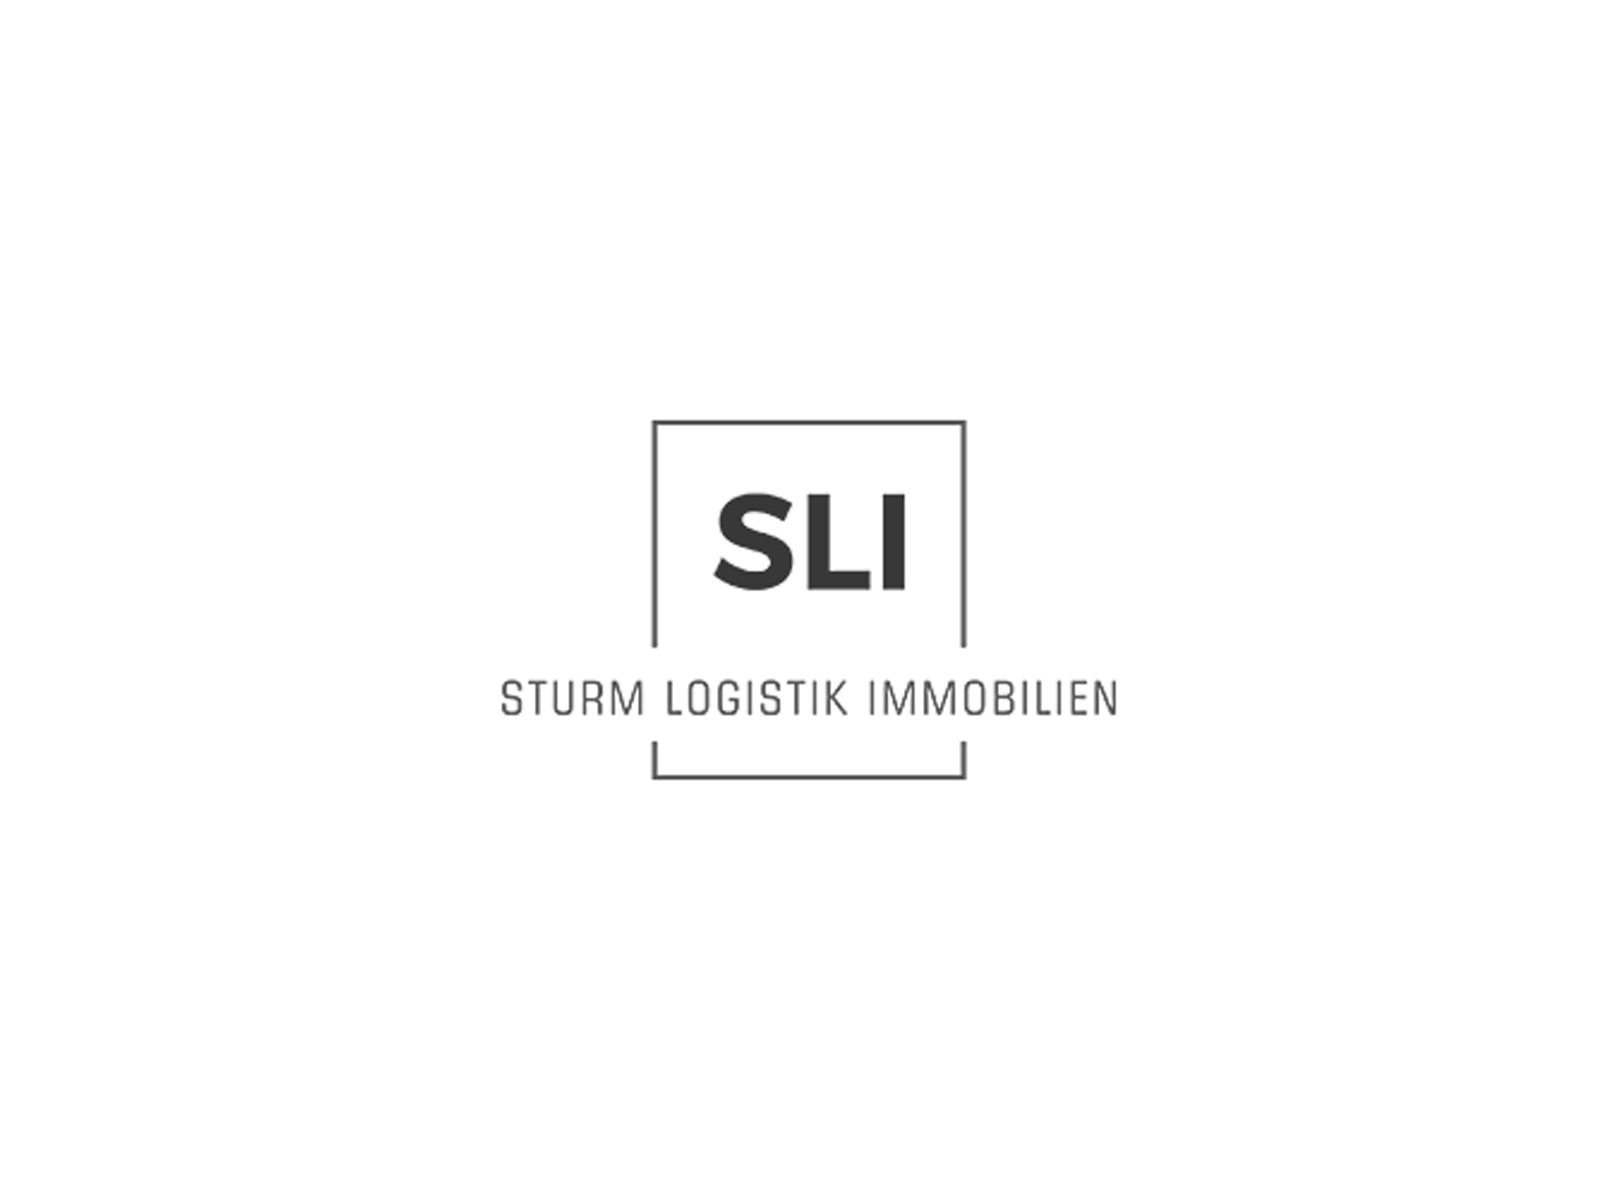 Sturm Logistik Immobilien